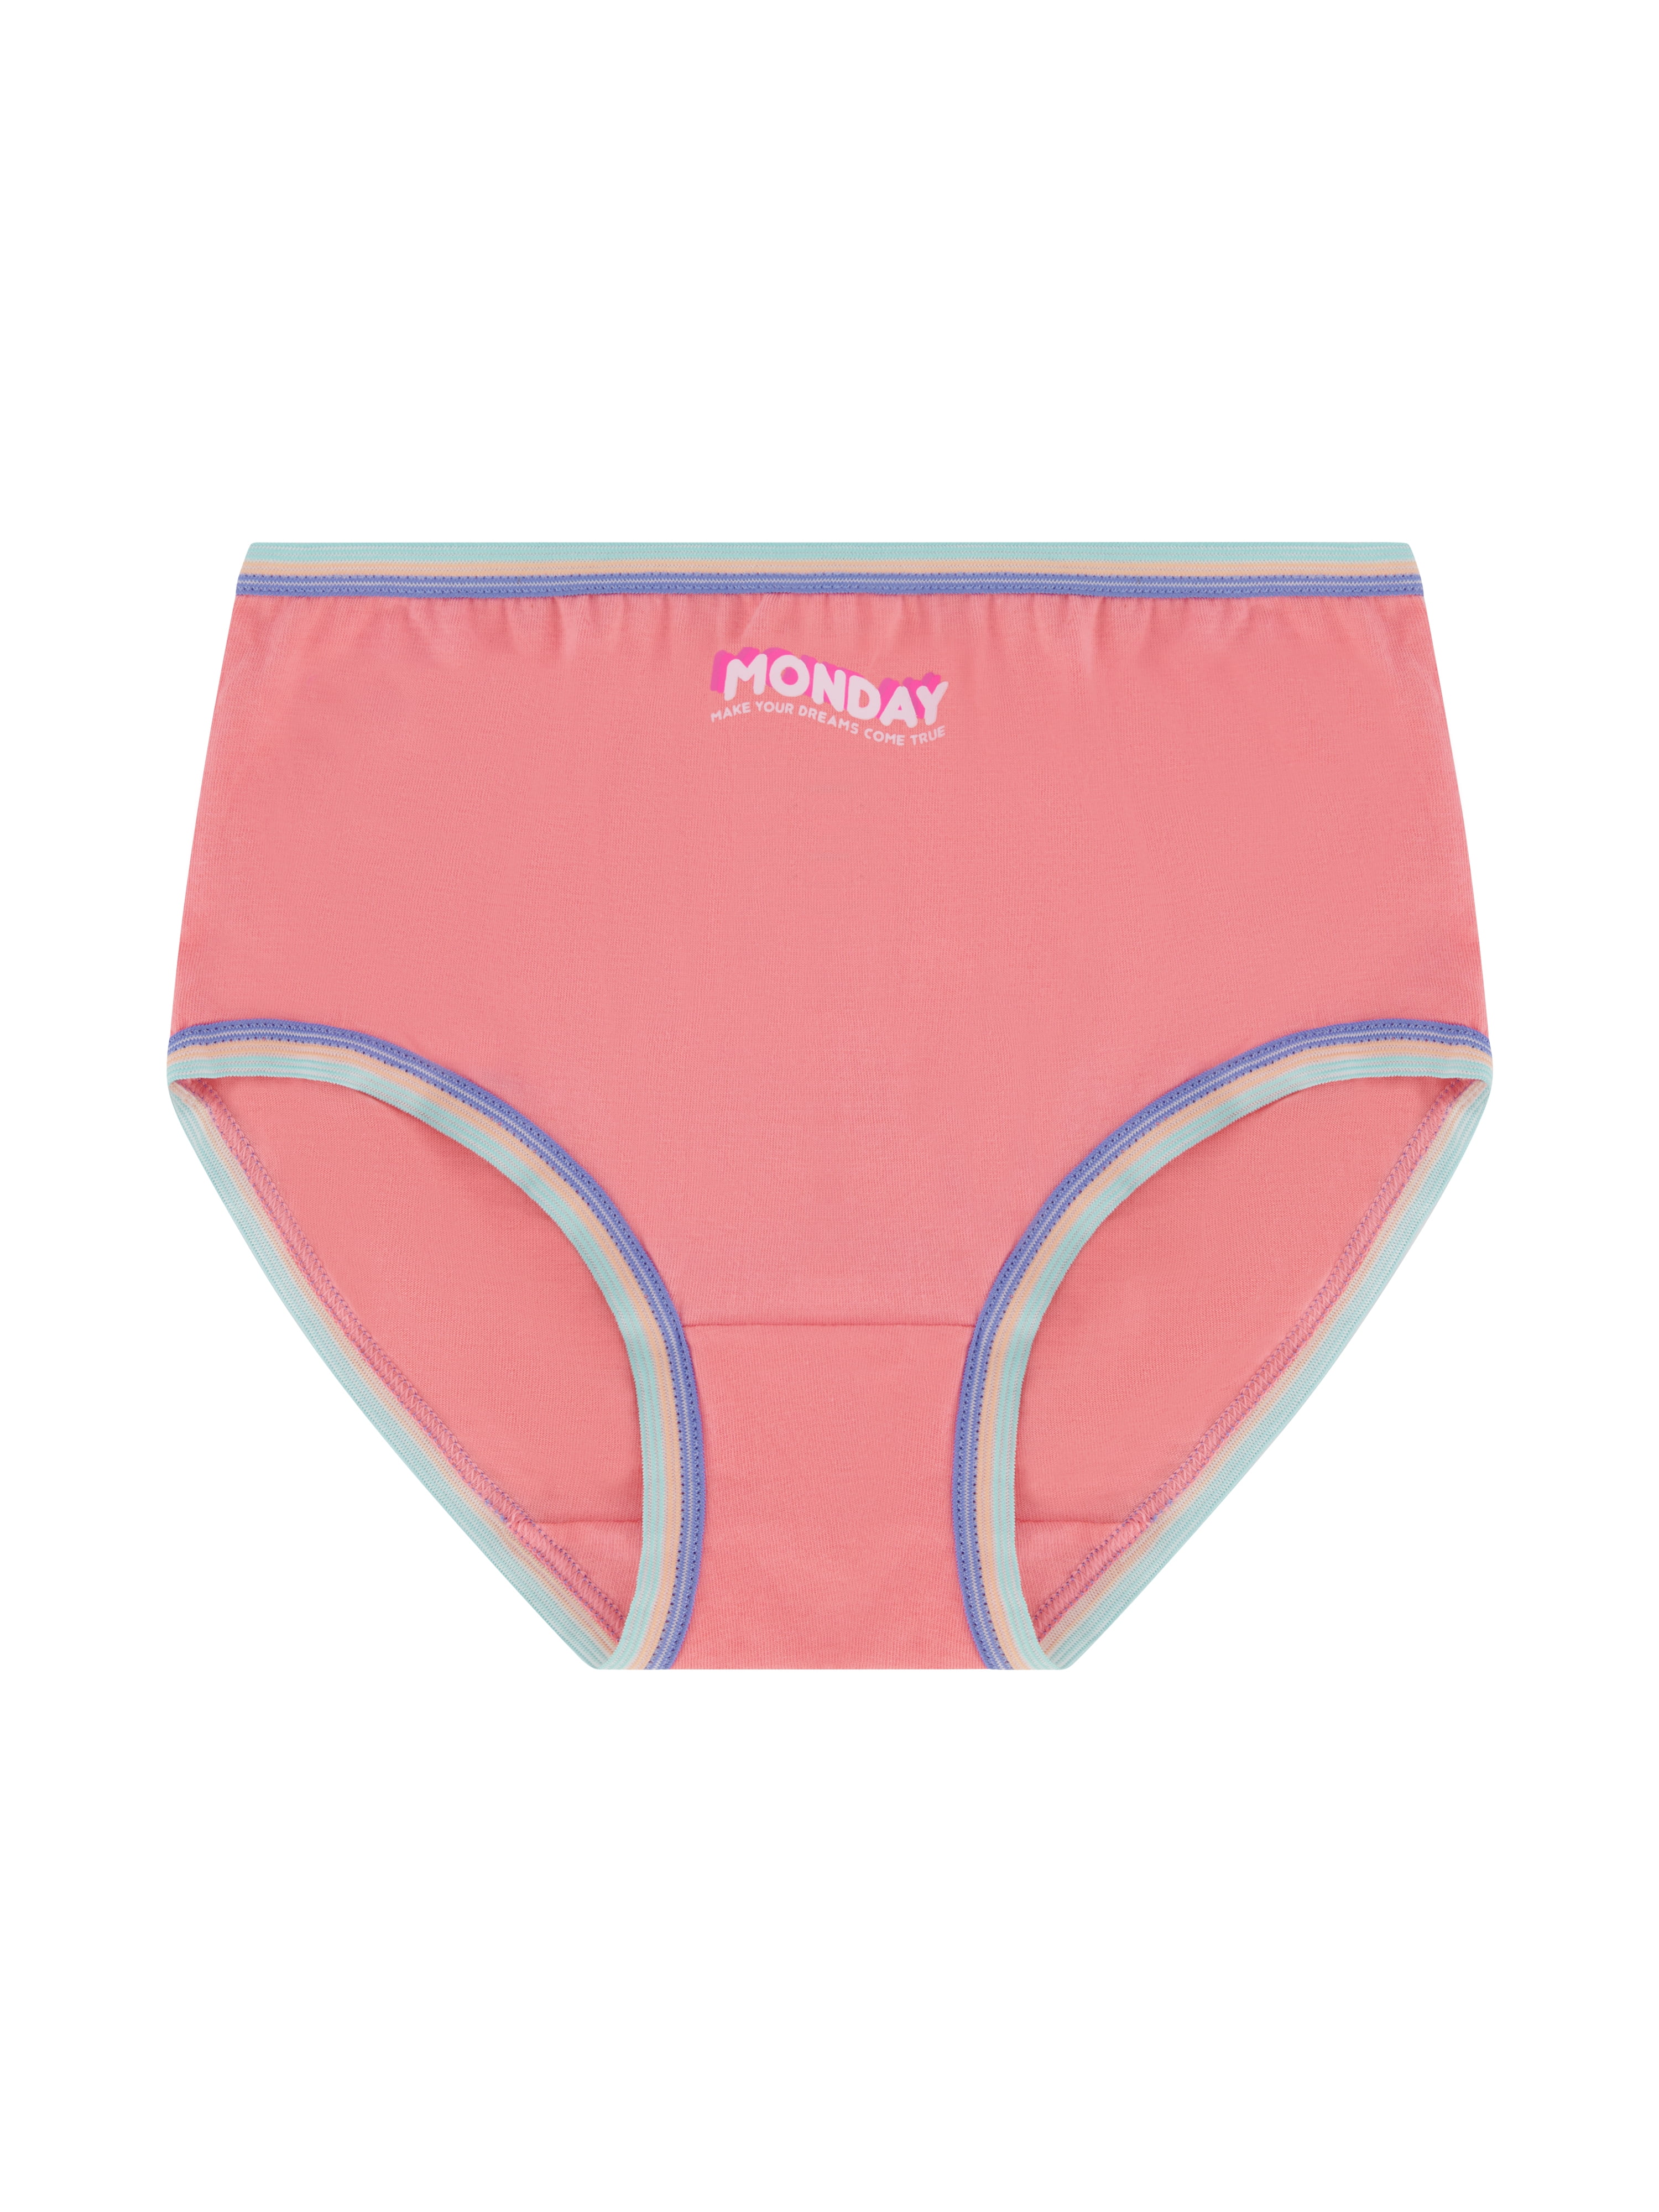 Wonder Nation Girls Brief Underwear 10PK Size 4-18